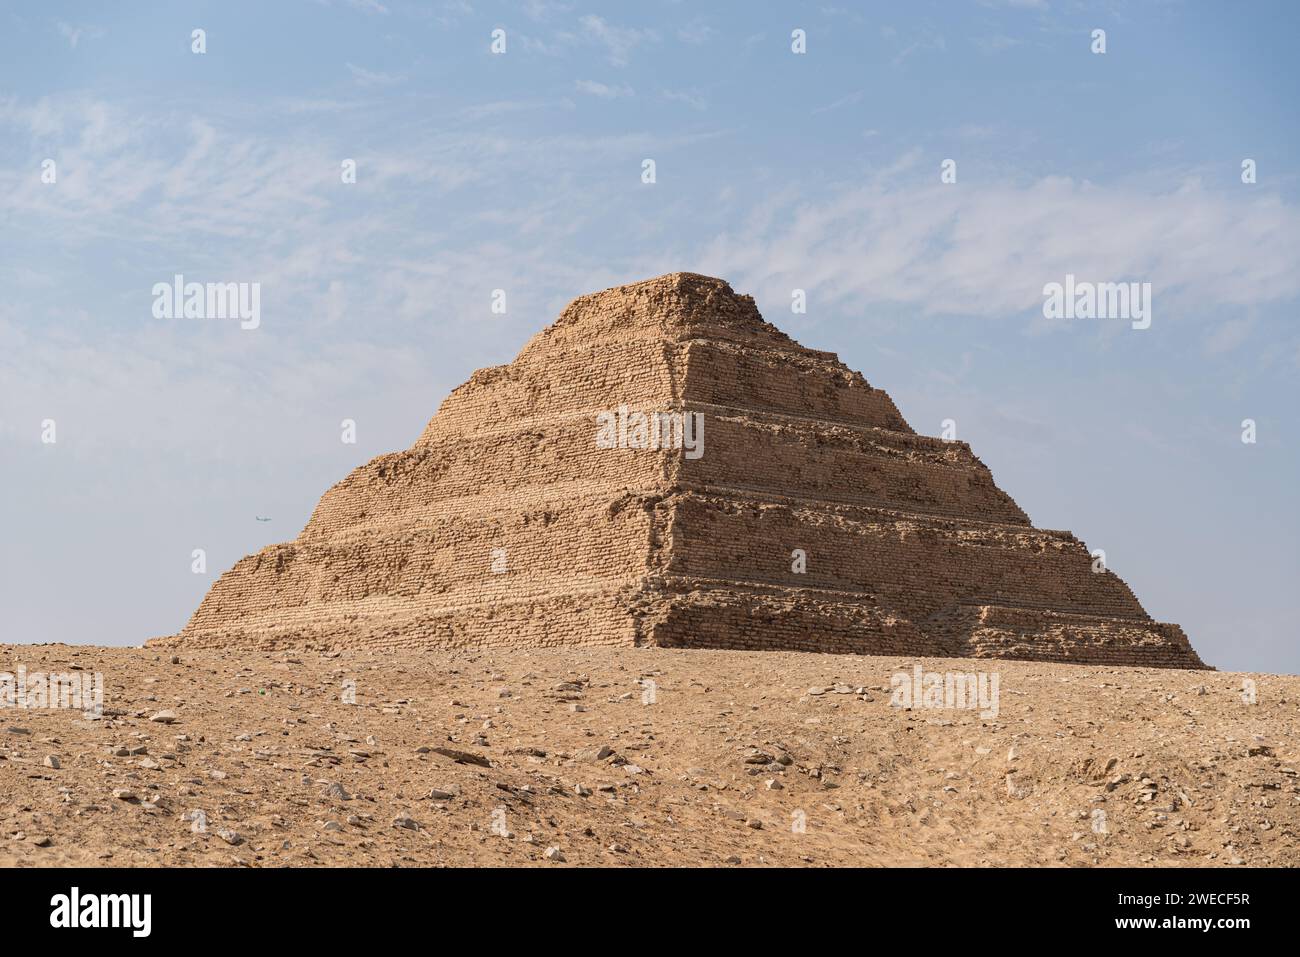 Piramide a gradoni di Djoser in Egitto: Una testimonianza dell'antica innovazione architettonica e della duratura eredità del faraone. Foto Stock